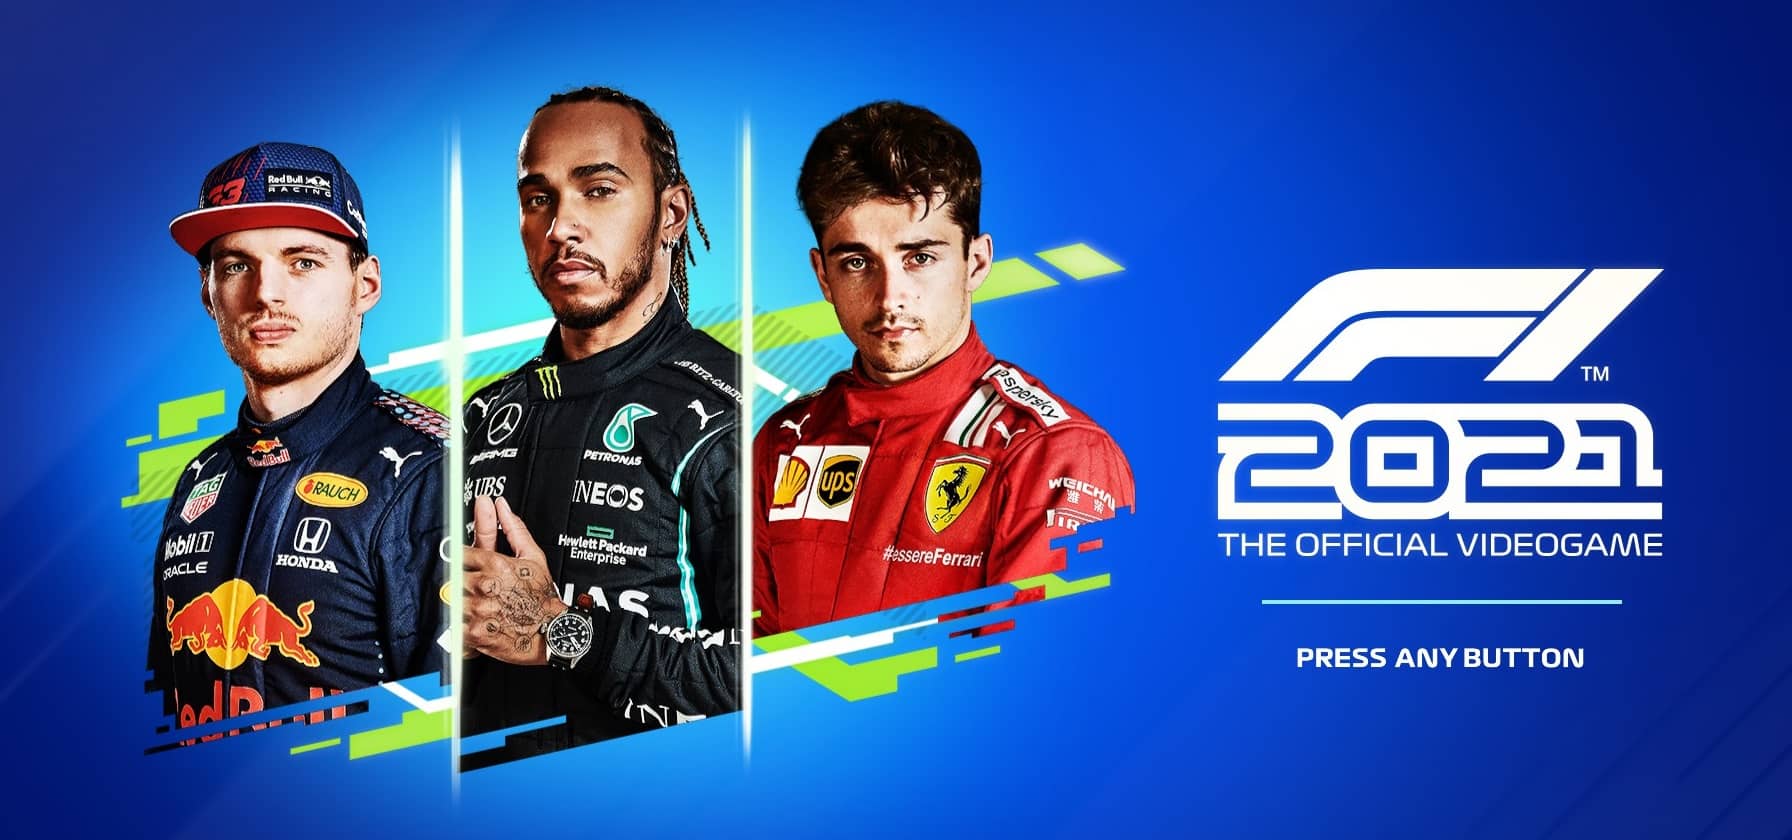 F1 2021 - náhledovka